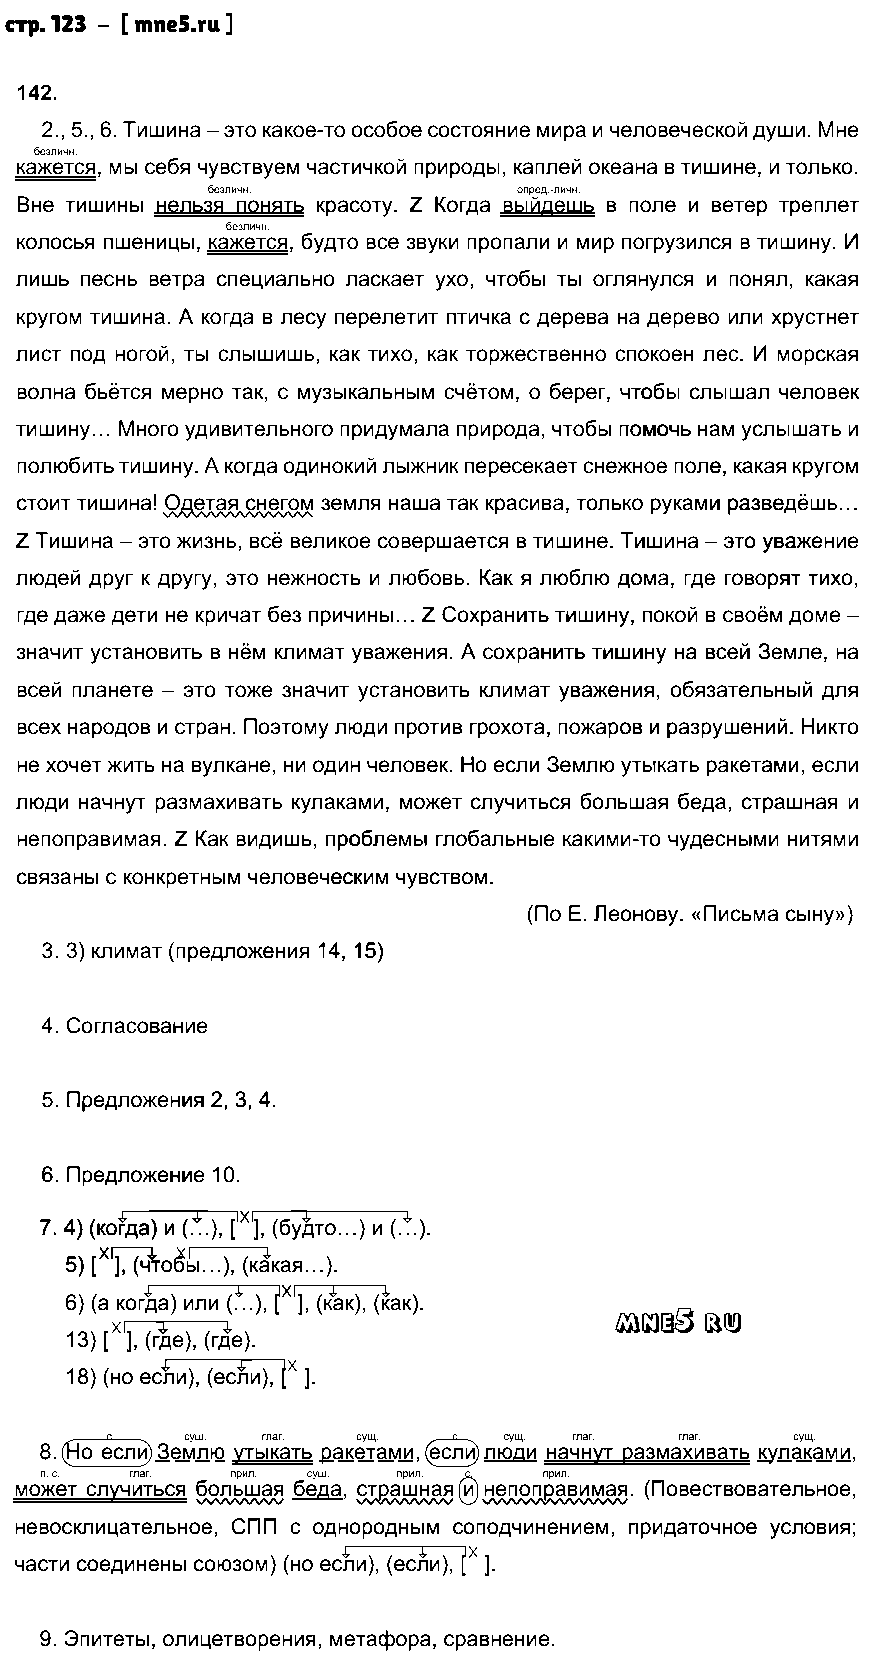 ГДЗ Русский язык 9 класс - стр. 123